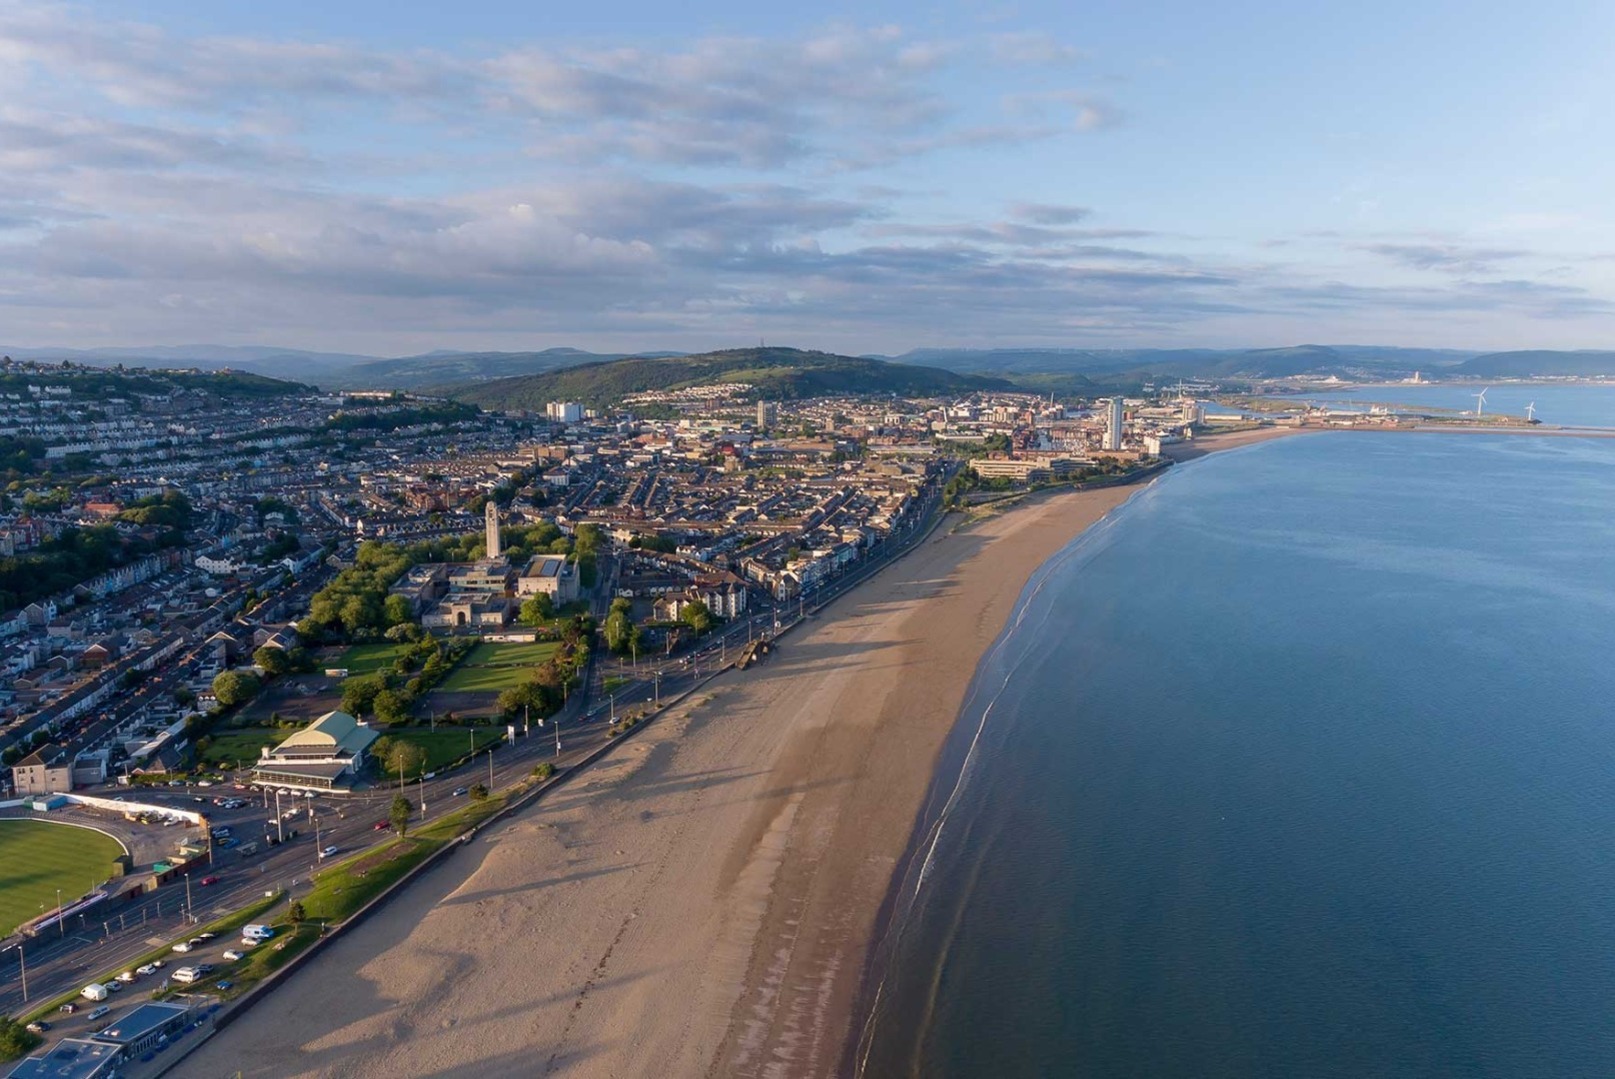 Long stretch of beach in Swansea